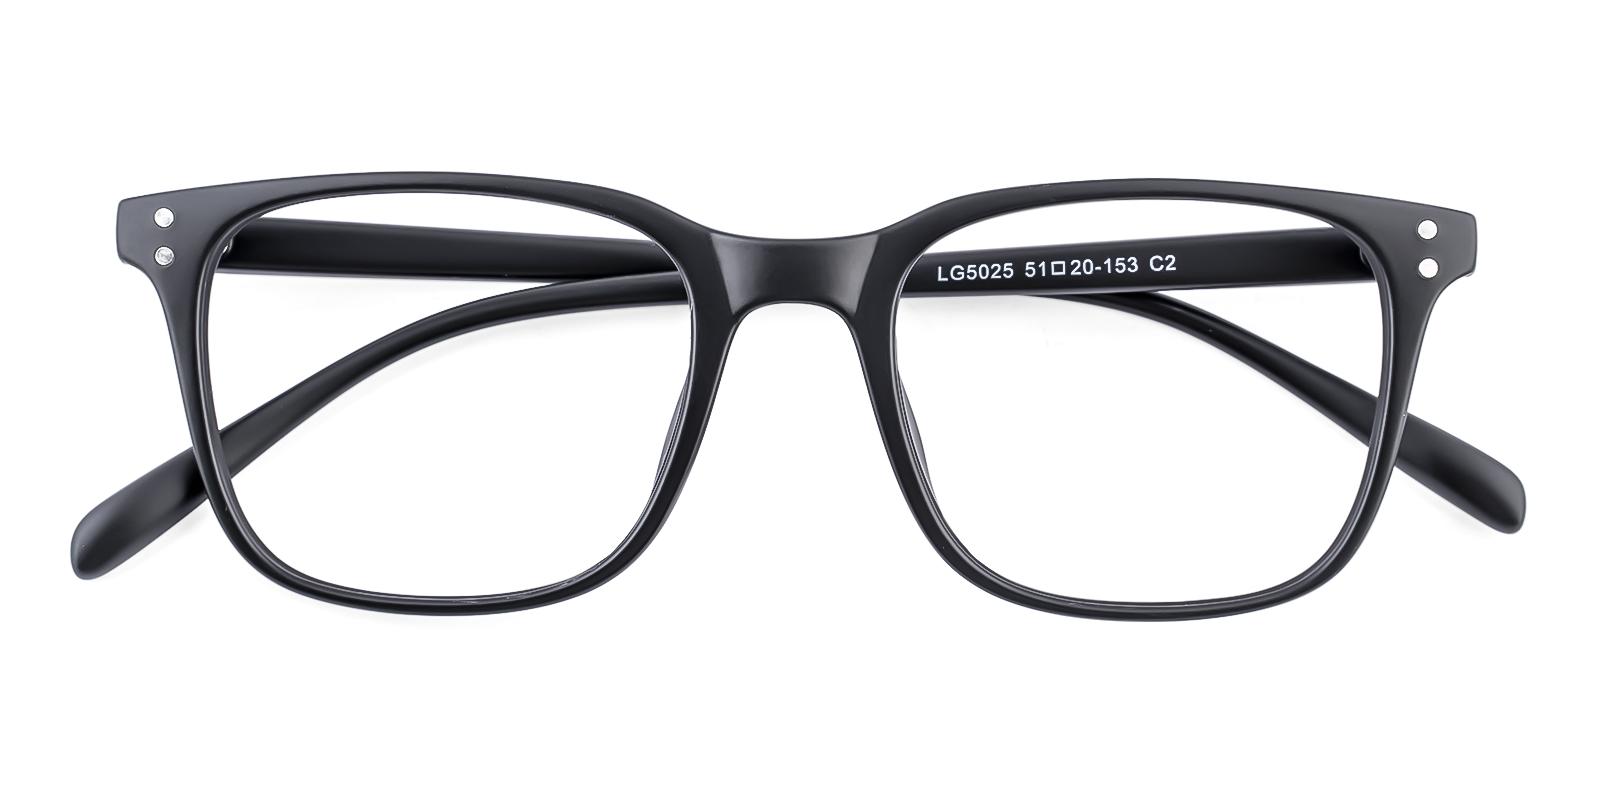 Clinoster Matte-black Plastic Eyeglasses , UniversalBridgeFit Frames from ABBE Glasses